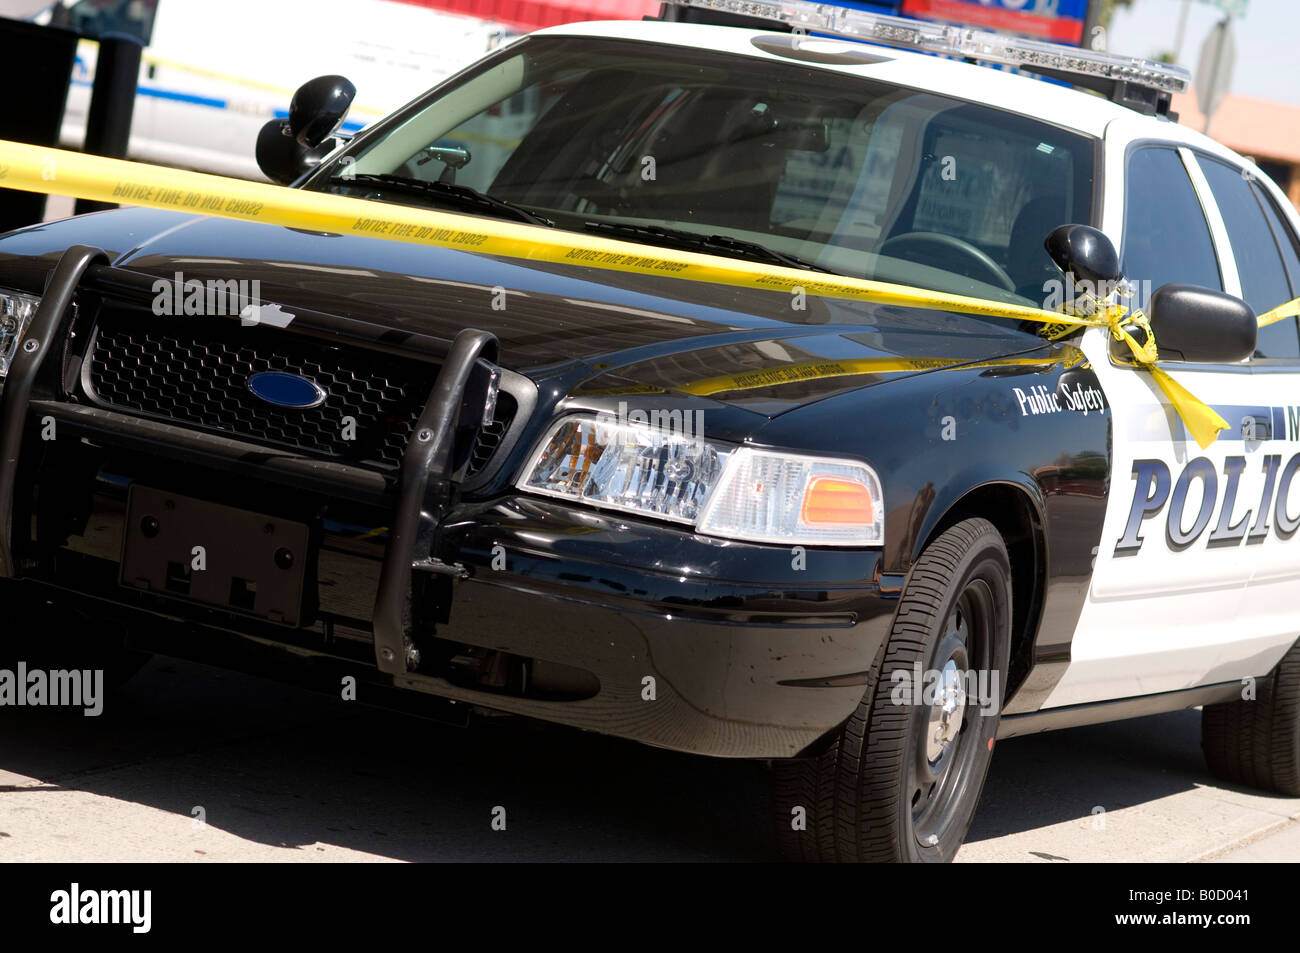 Scena del crimine in area urbana della città in Mesa,AZ,STATI UNITI D'AMERICA. Cordone di polizia fuori area attorno a una stazione di gas dopo una brutale rapina a mano armata. Foto Stock